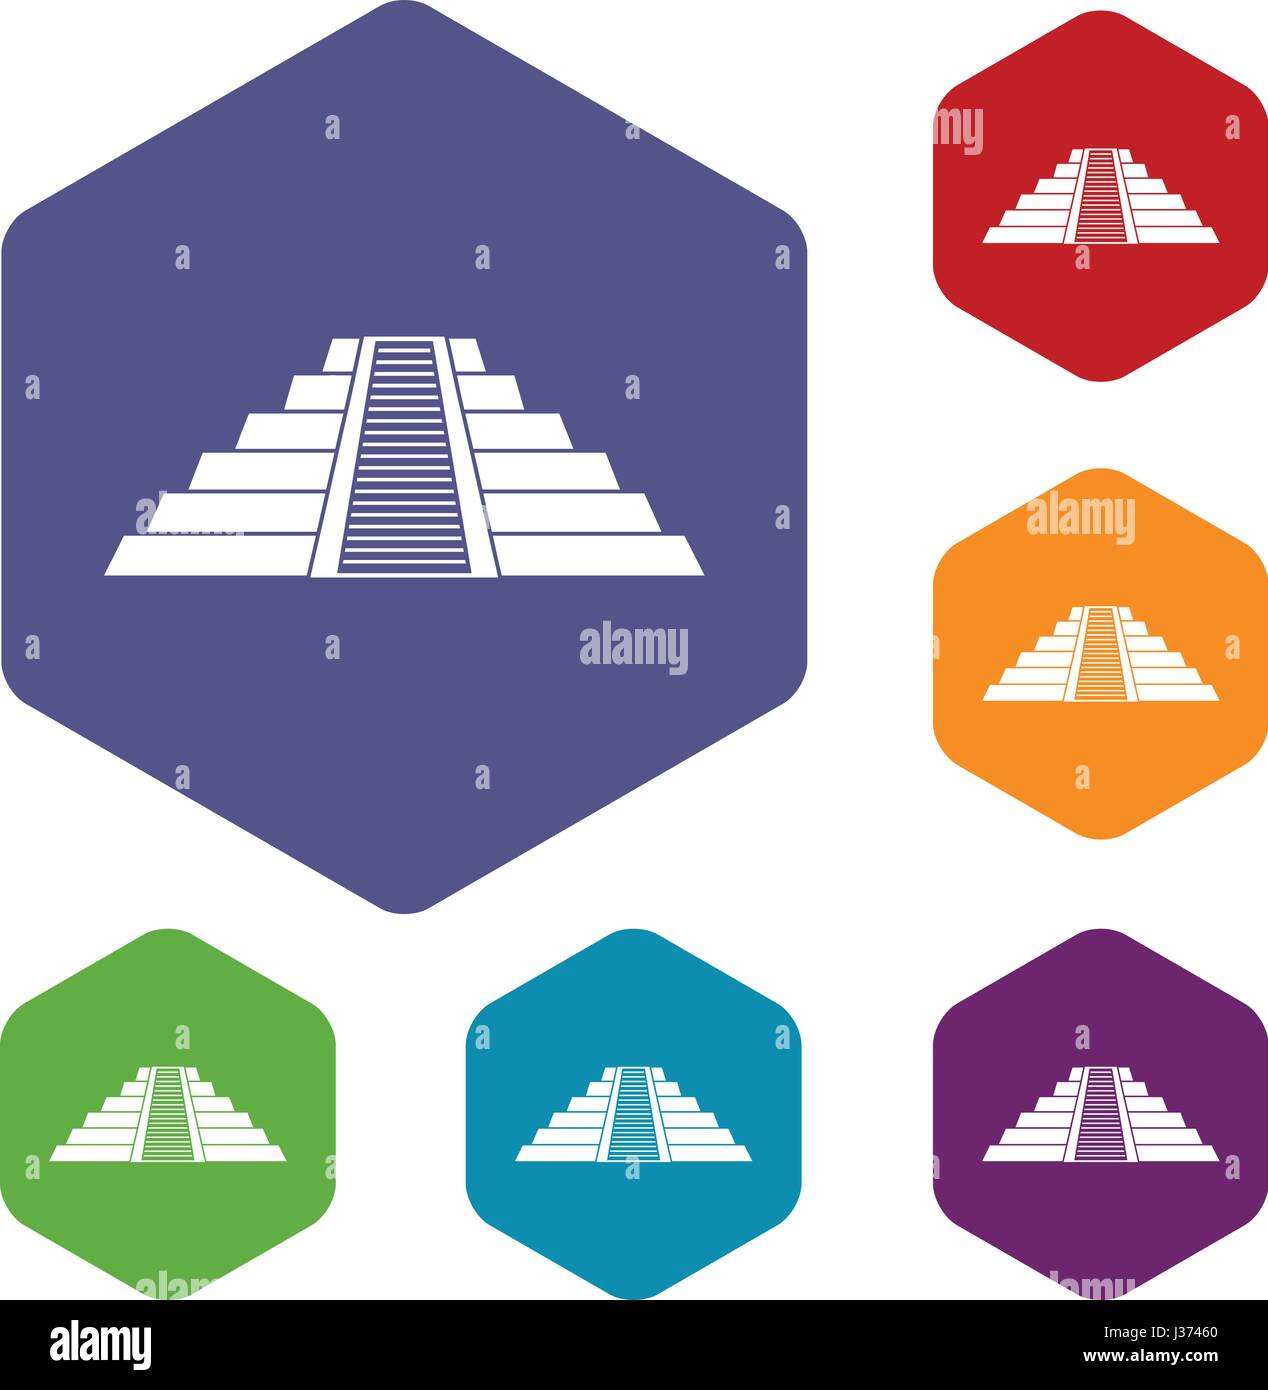 Ziggurat in Chichen Itza icons set hexagon Stock Vector